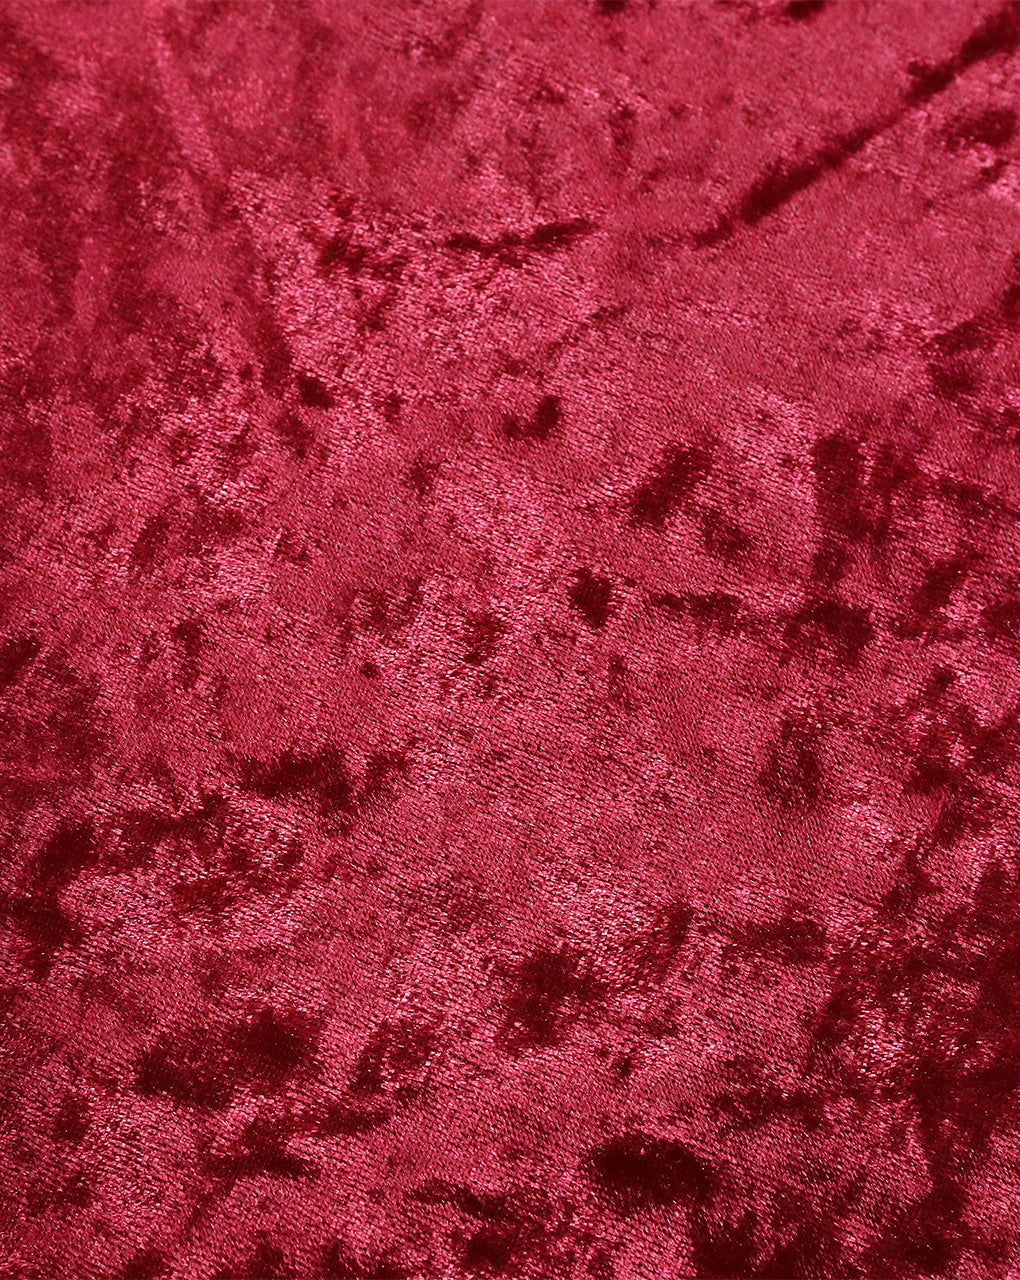 RED PLAIN CRUSH VELVET LYCRA FABRIC ( WIDTH 58 INCHES )